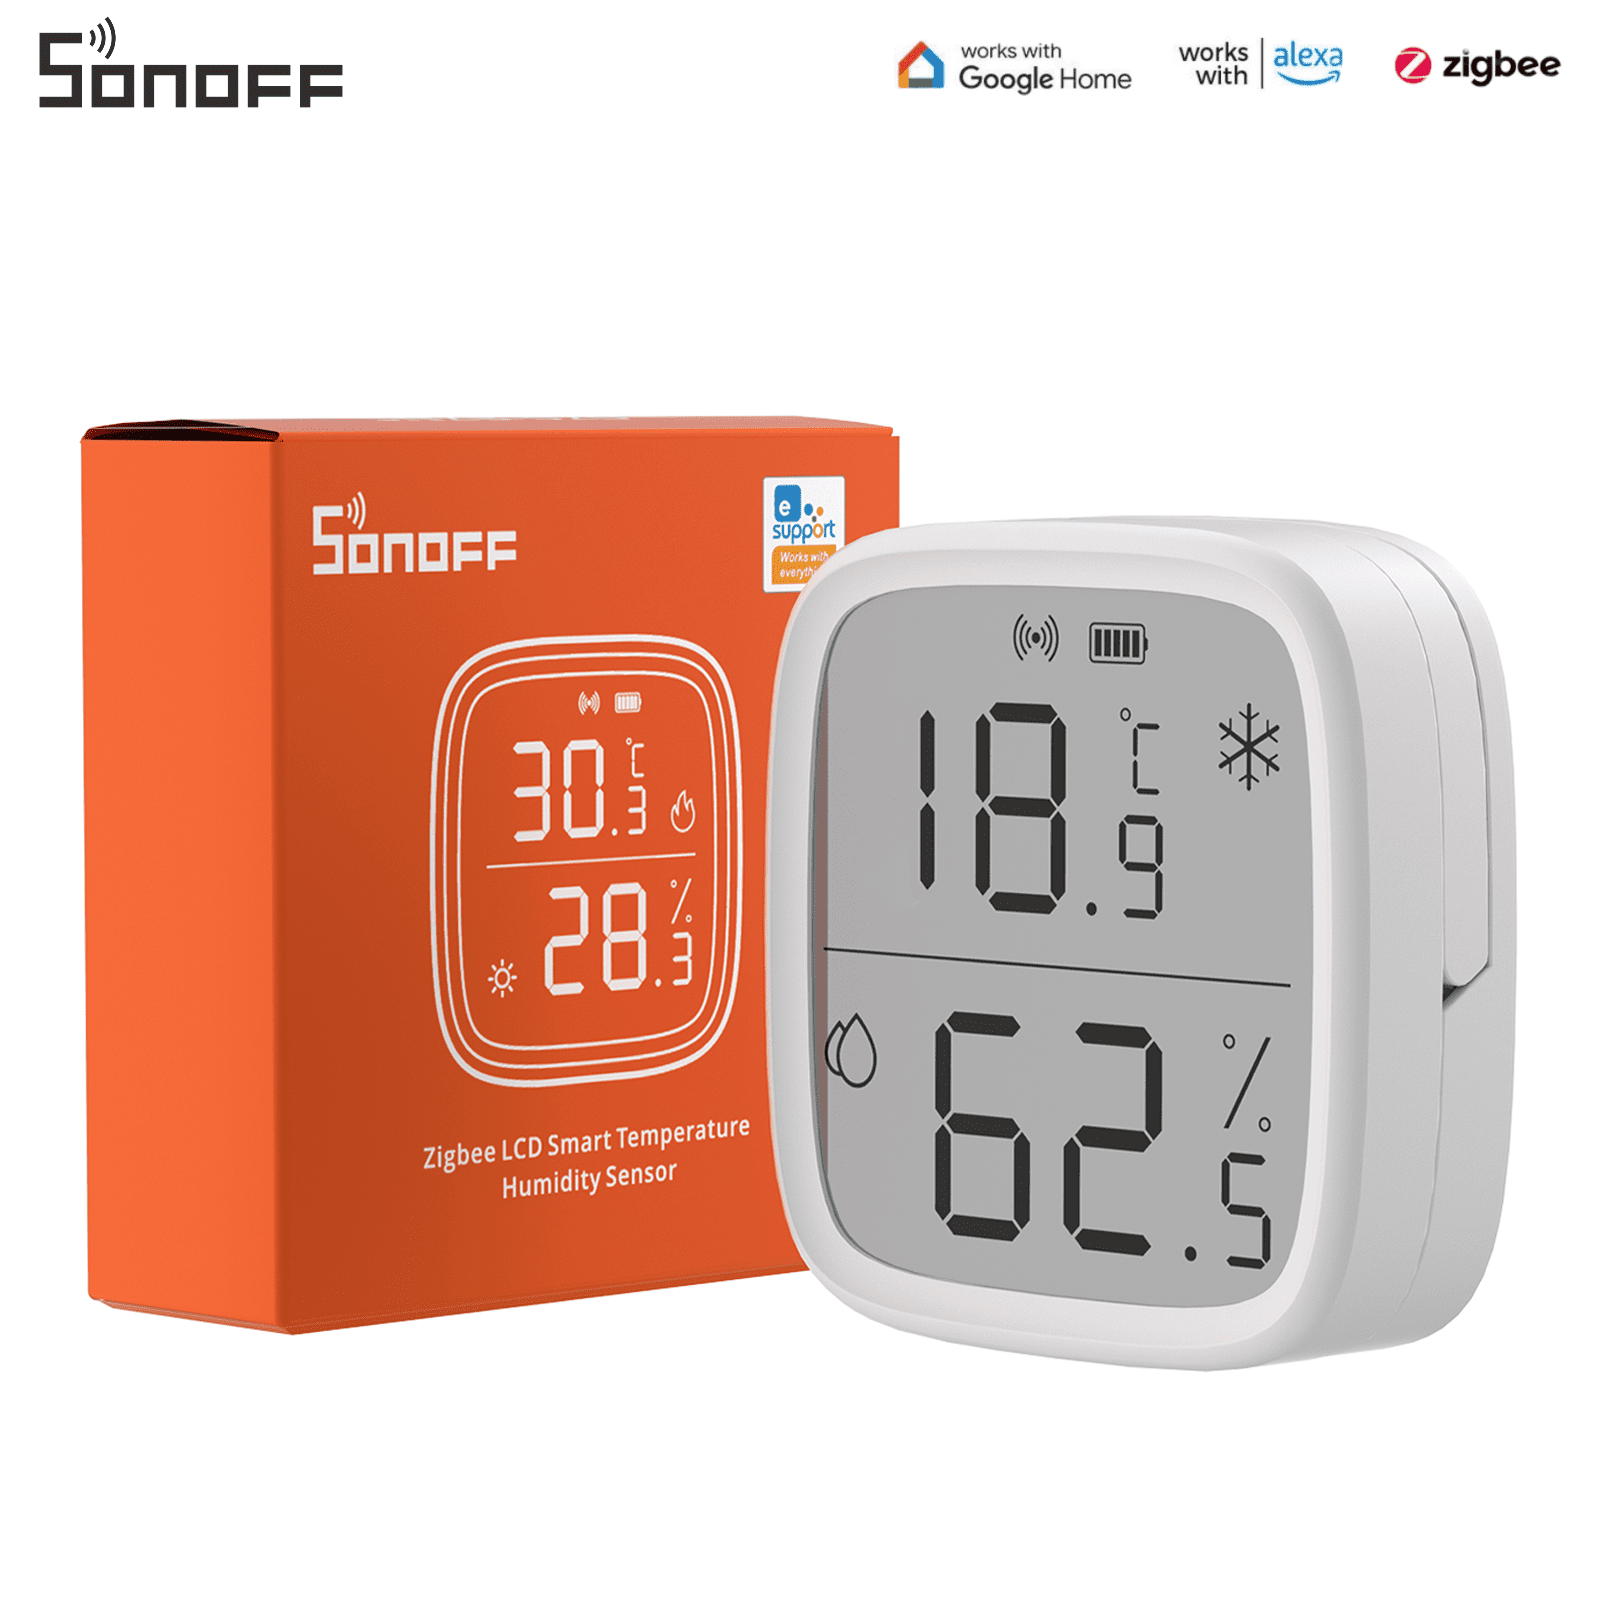 SONOFF Zigbee Smart Indoor Temperature Humidity Sensor,Zigbee